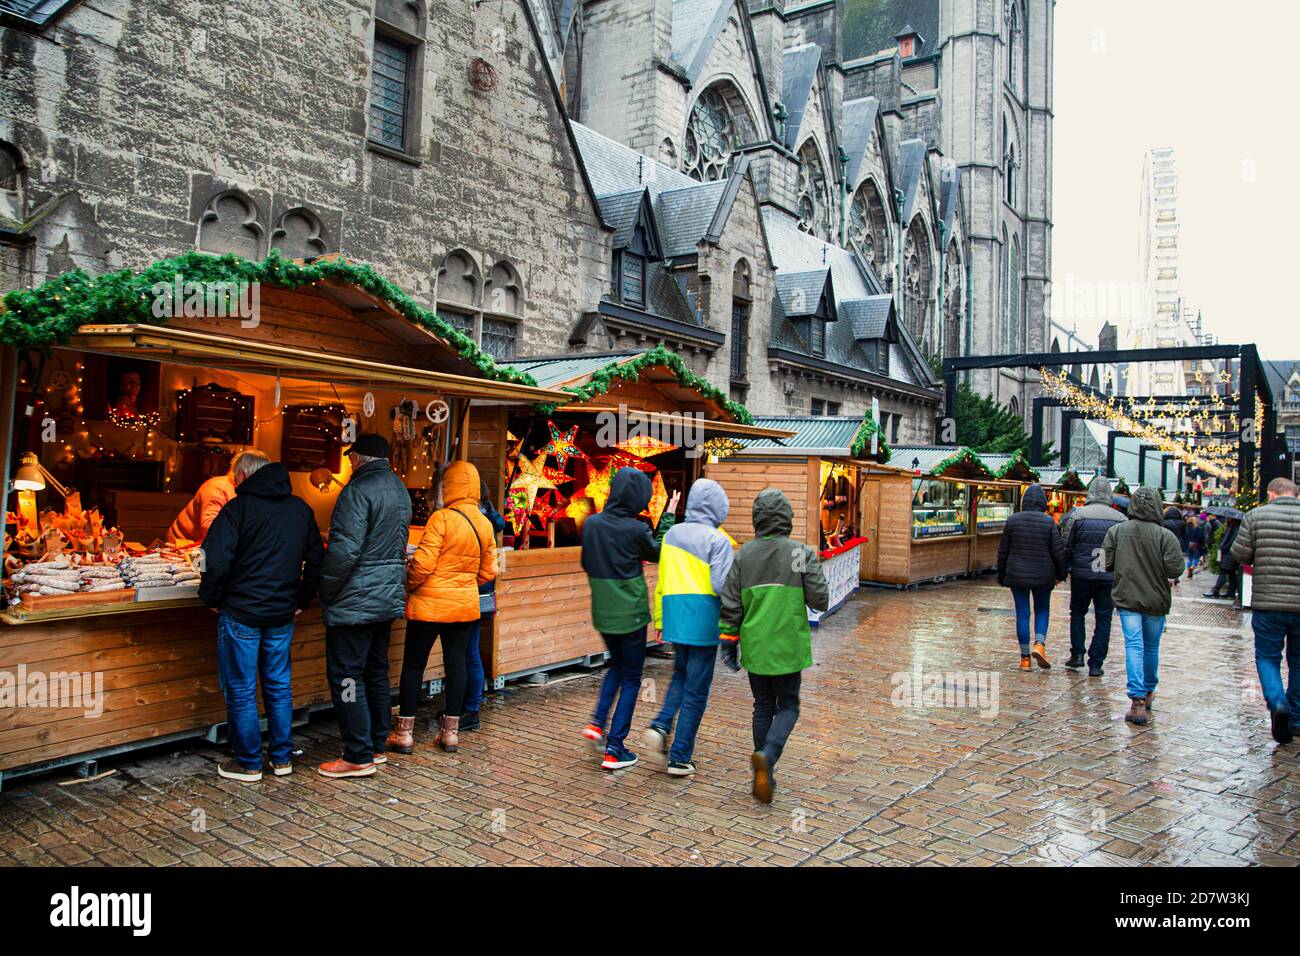 Marché de Noël à Gand, Belgique. Les gens qui marchent, les kiosques de noël, les pavillons et l'église en arrière-plan. Banque D'Images